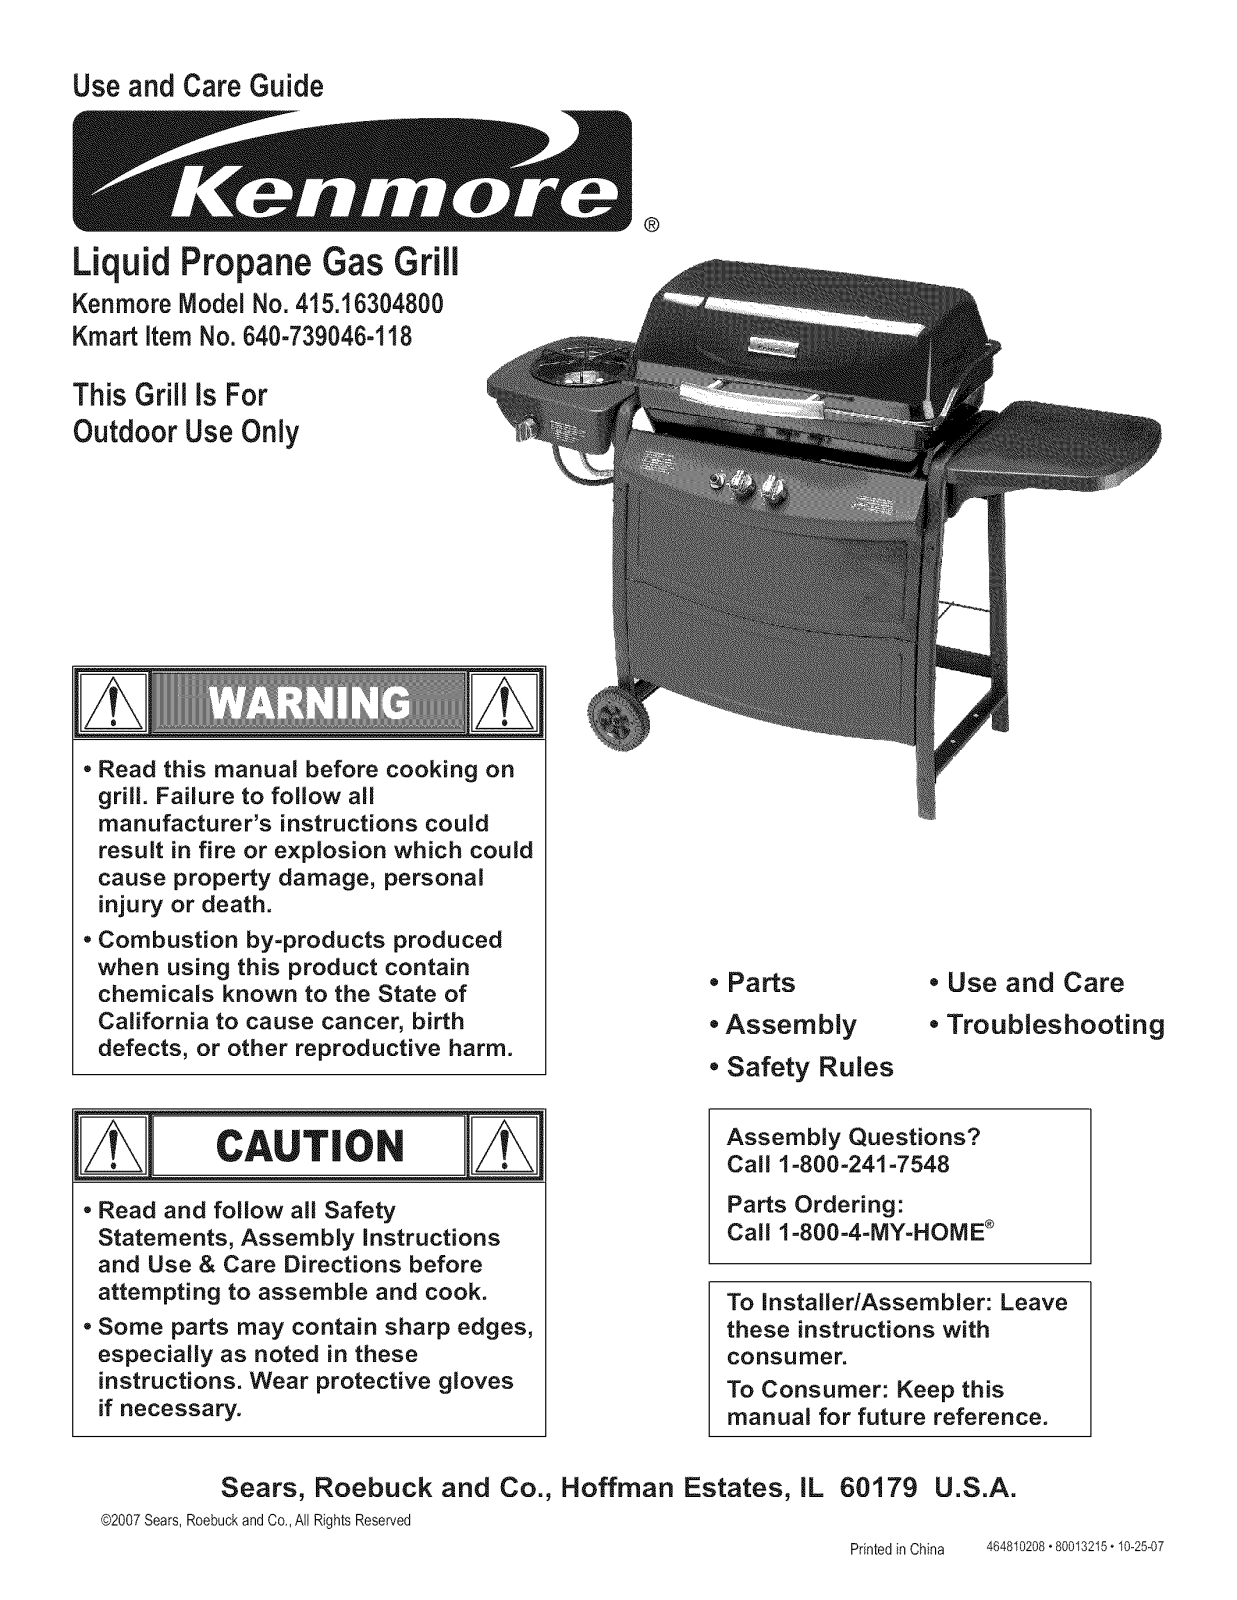 Kenmore 640-739046-118 Owner’s Manual